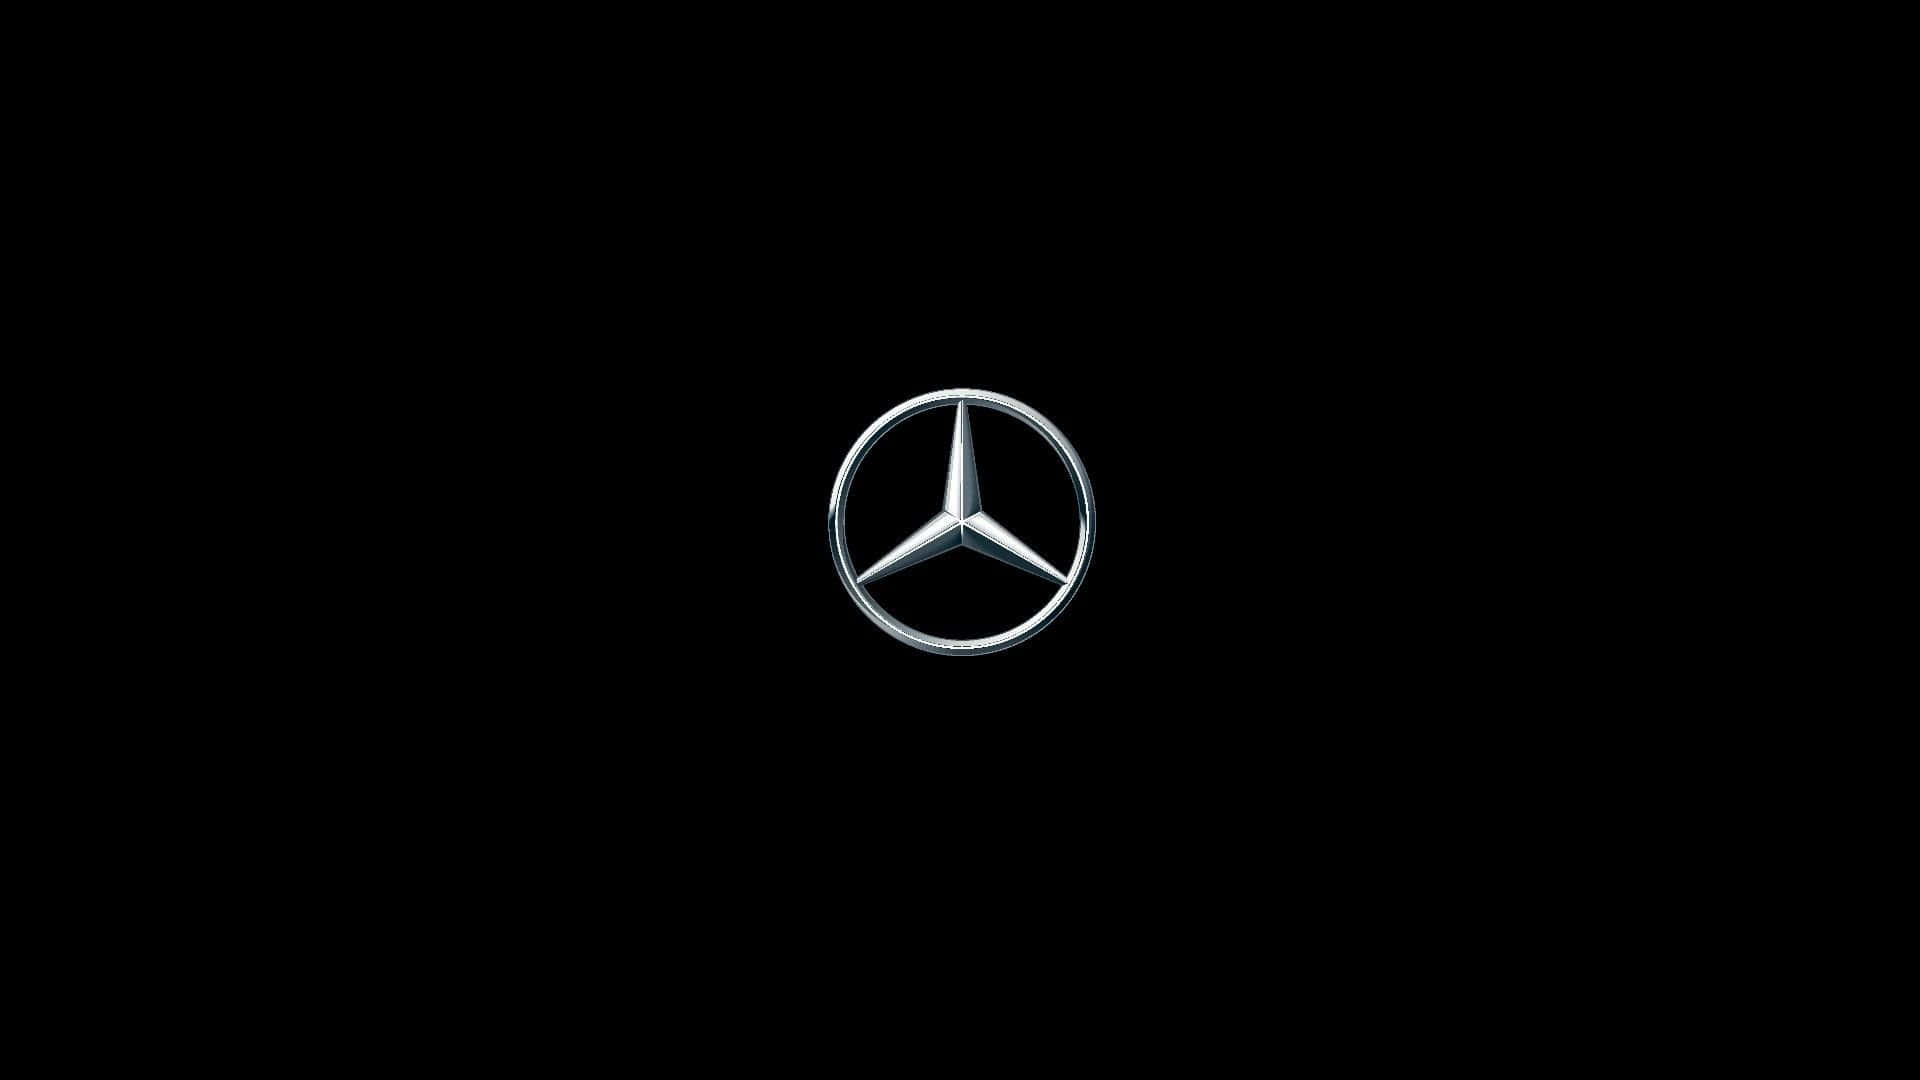 An All-Black Luxurious Mercedes Wallpaper